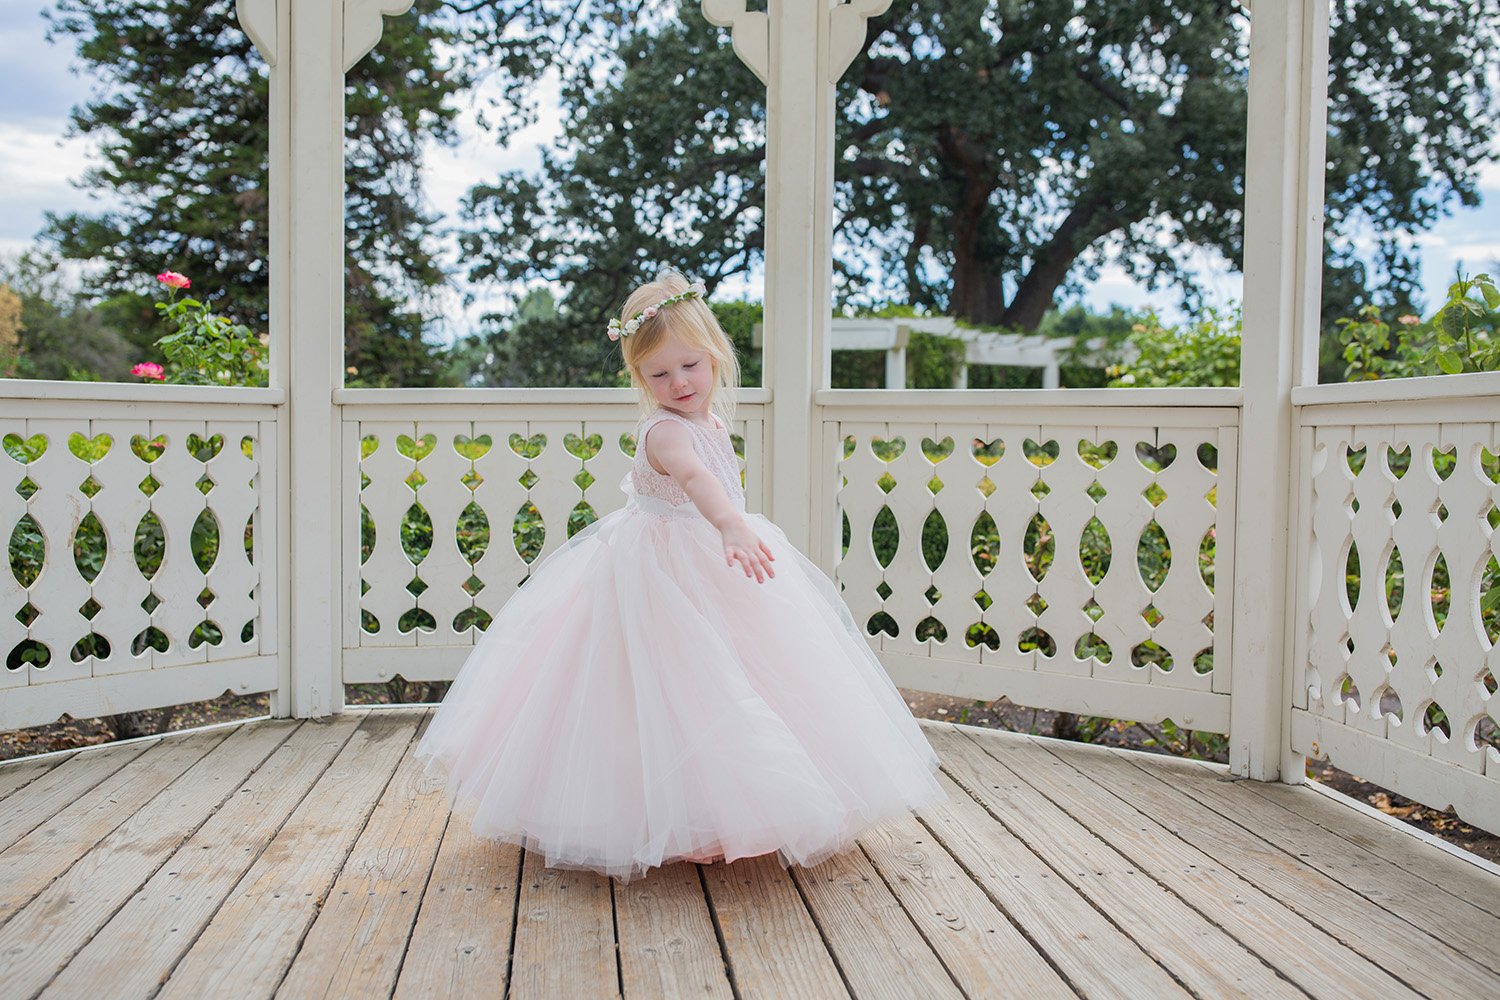 Fall Wedding Dresses: Flower Girl Dress and Wedding Guest Ideas ...